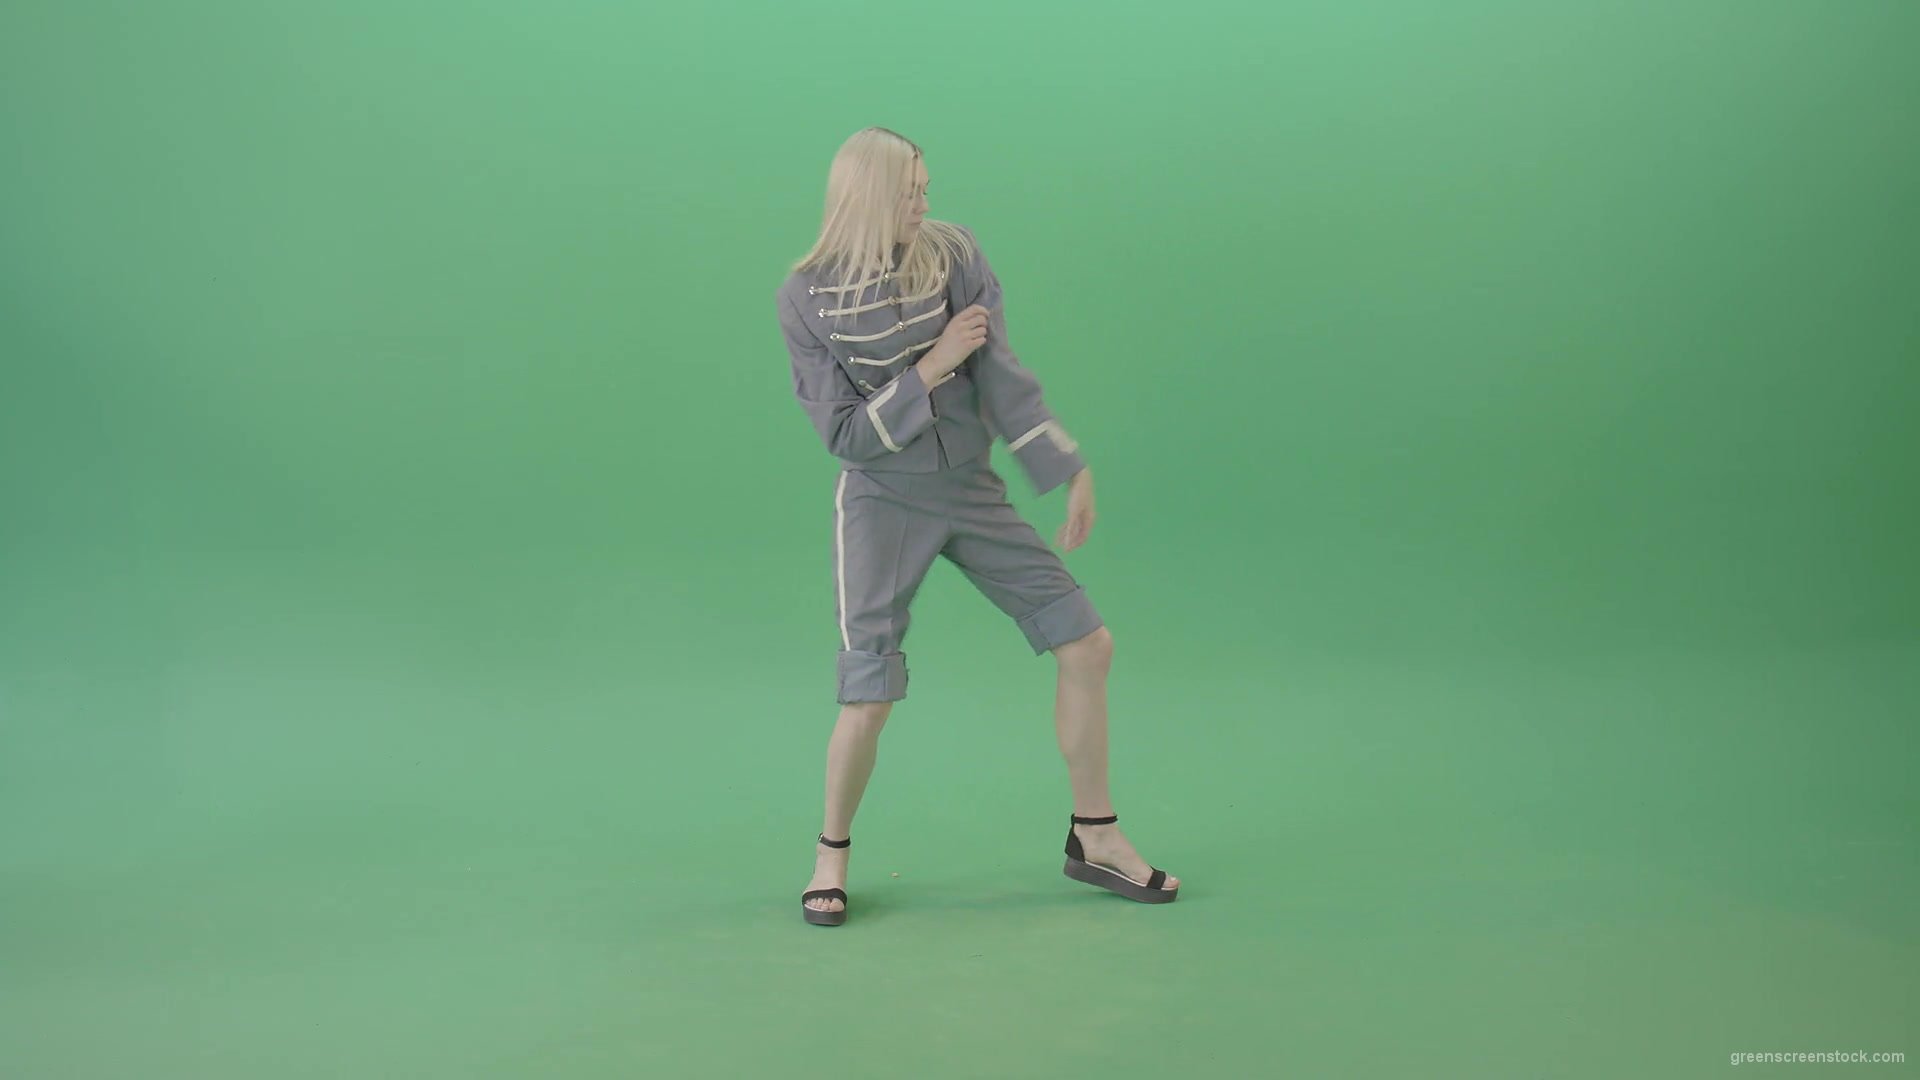 Techno-rave-blonde-girl-dancing-house-chill-isolated-on-green-screen-4K-Video-Footage-1920_008 Green Screen Stock